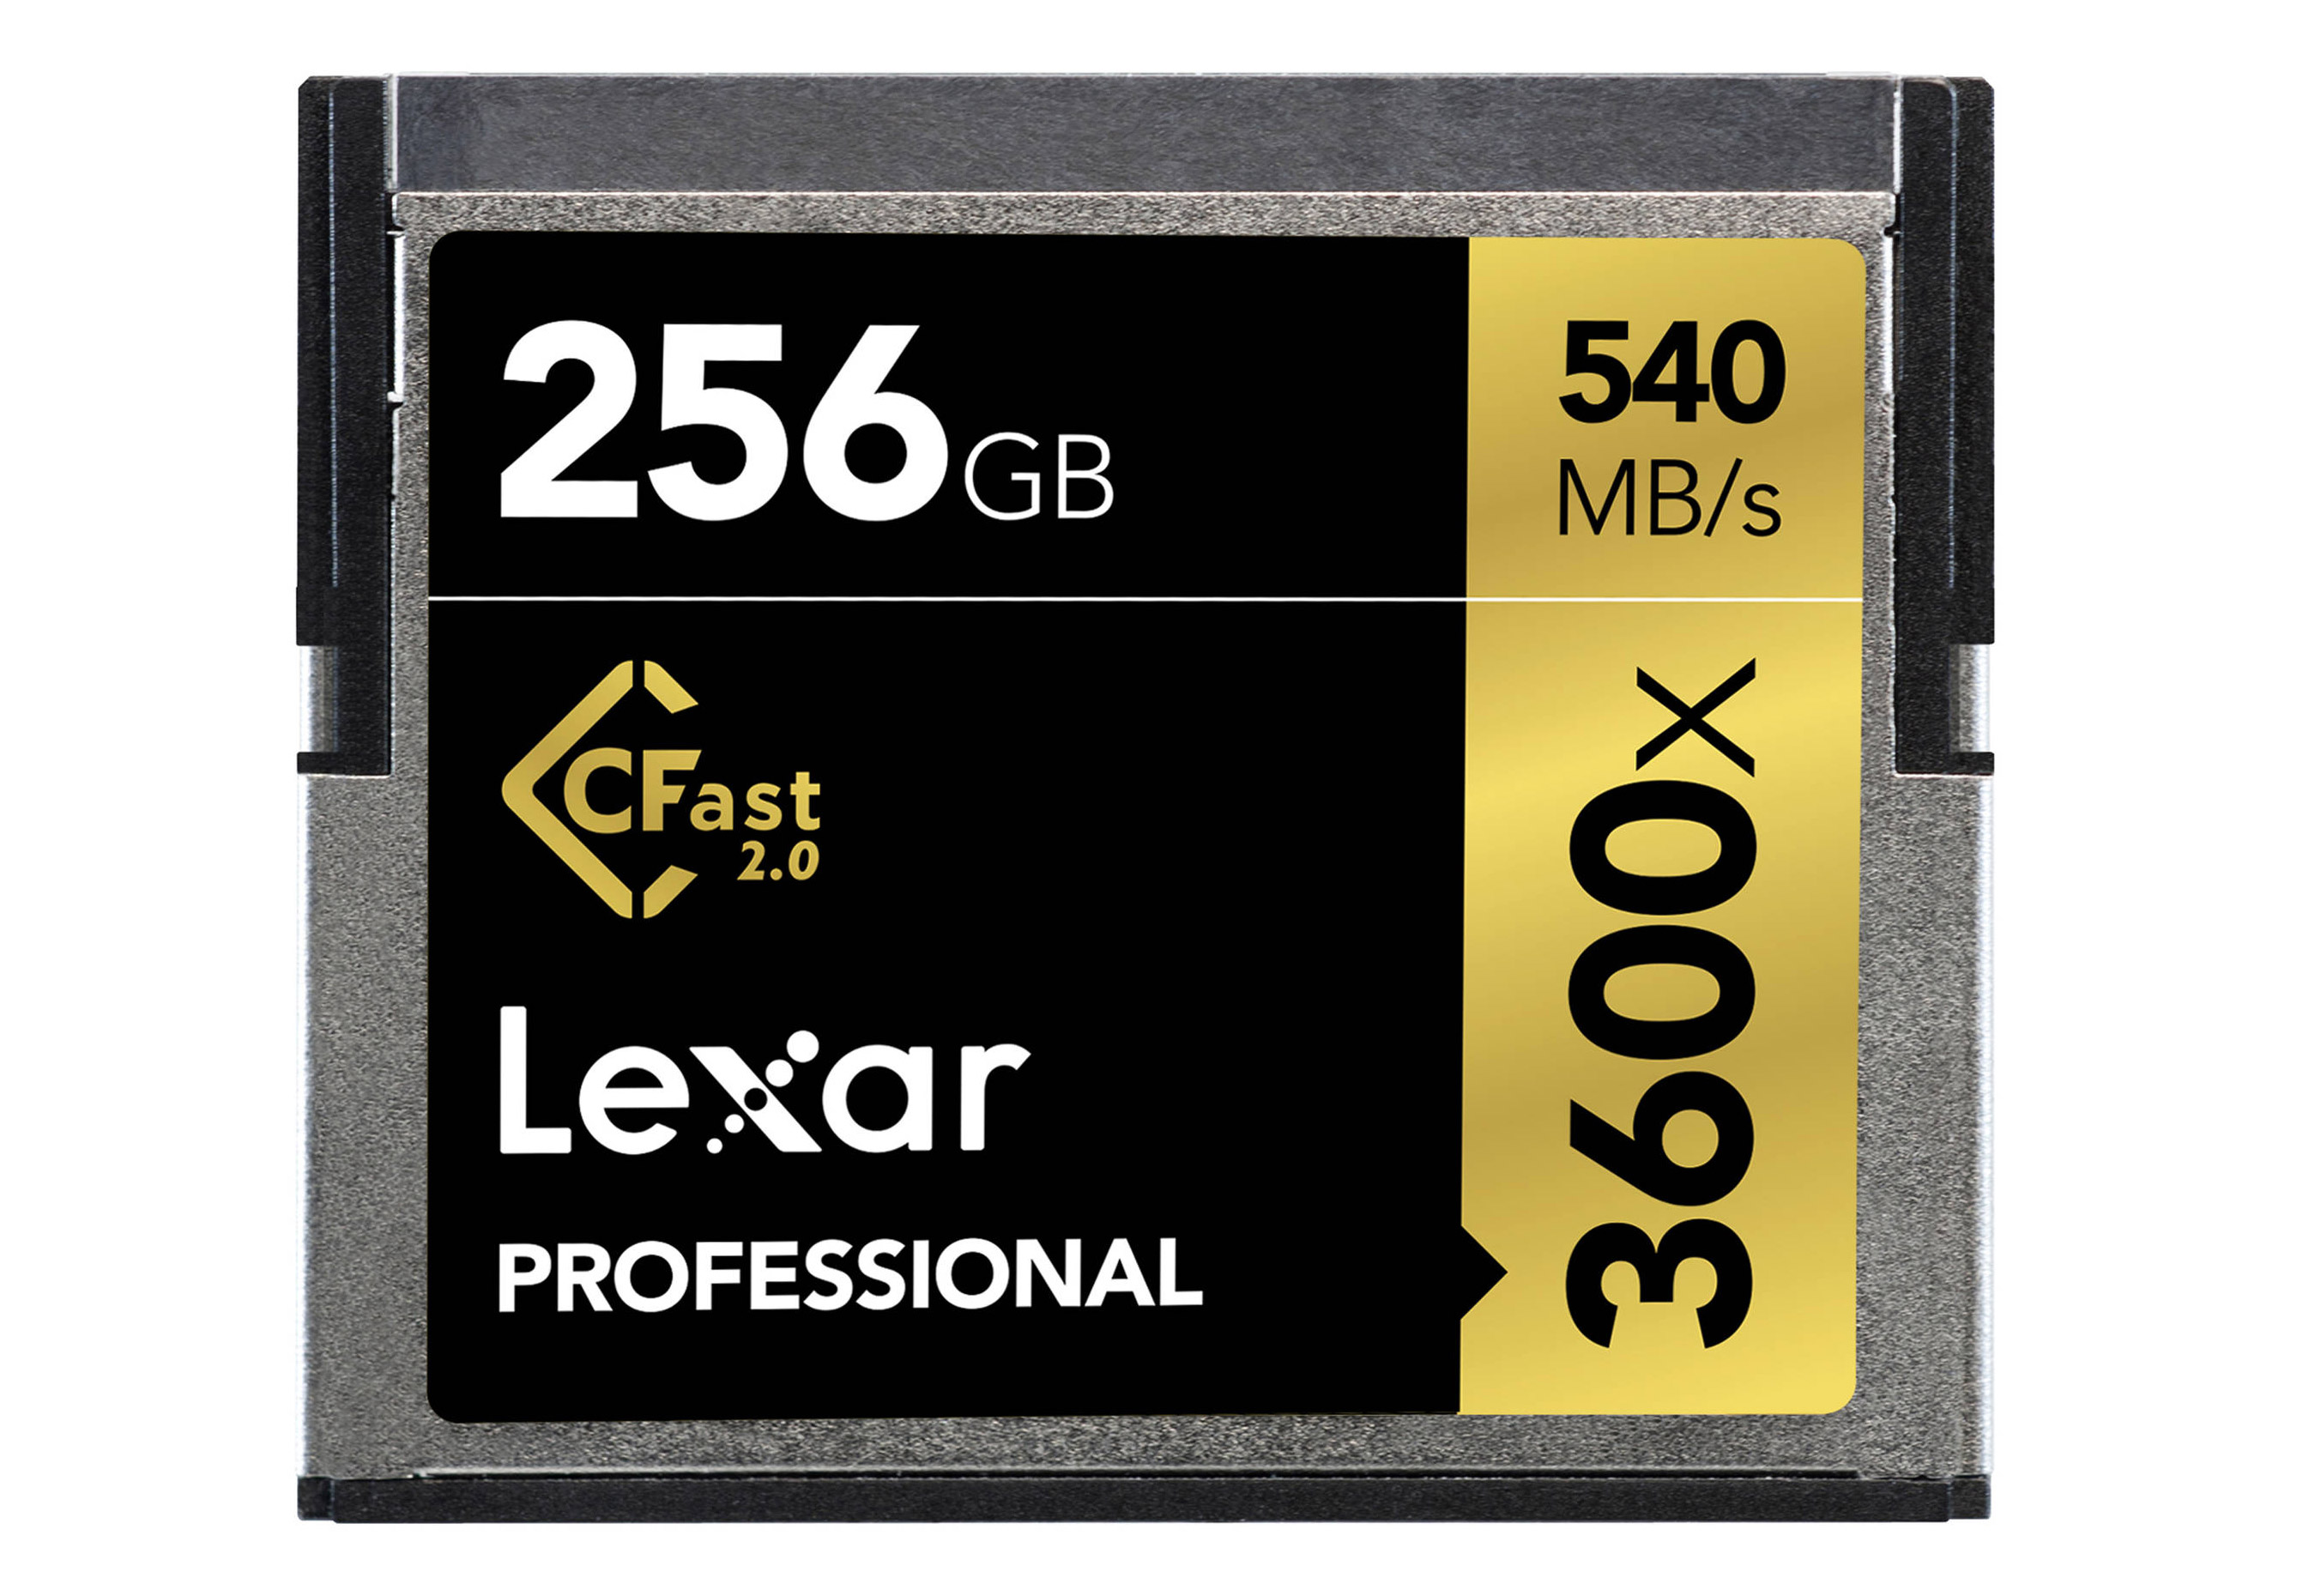 Lexar Professional CFast 256 GB 3600x (540 MB/s)